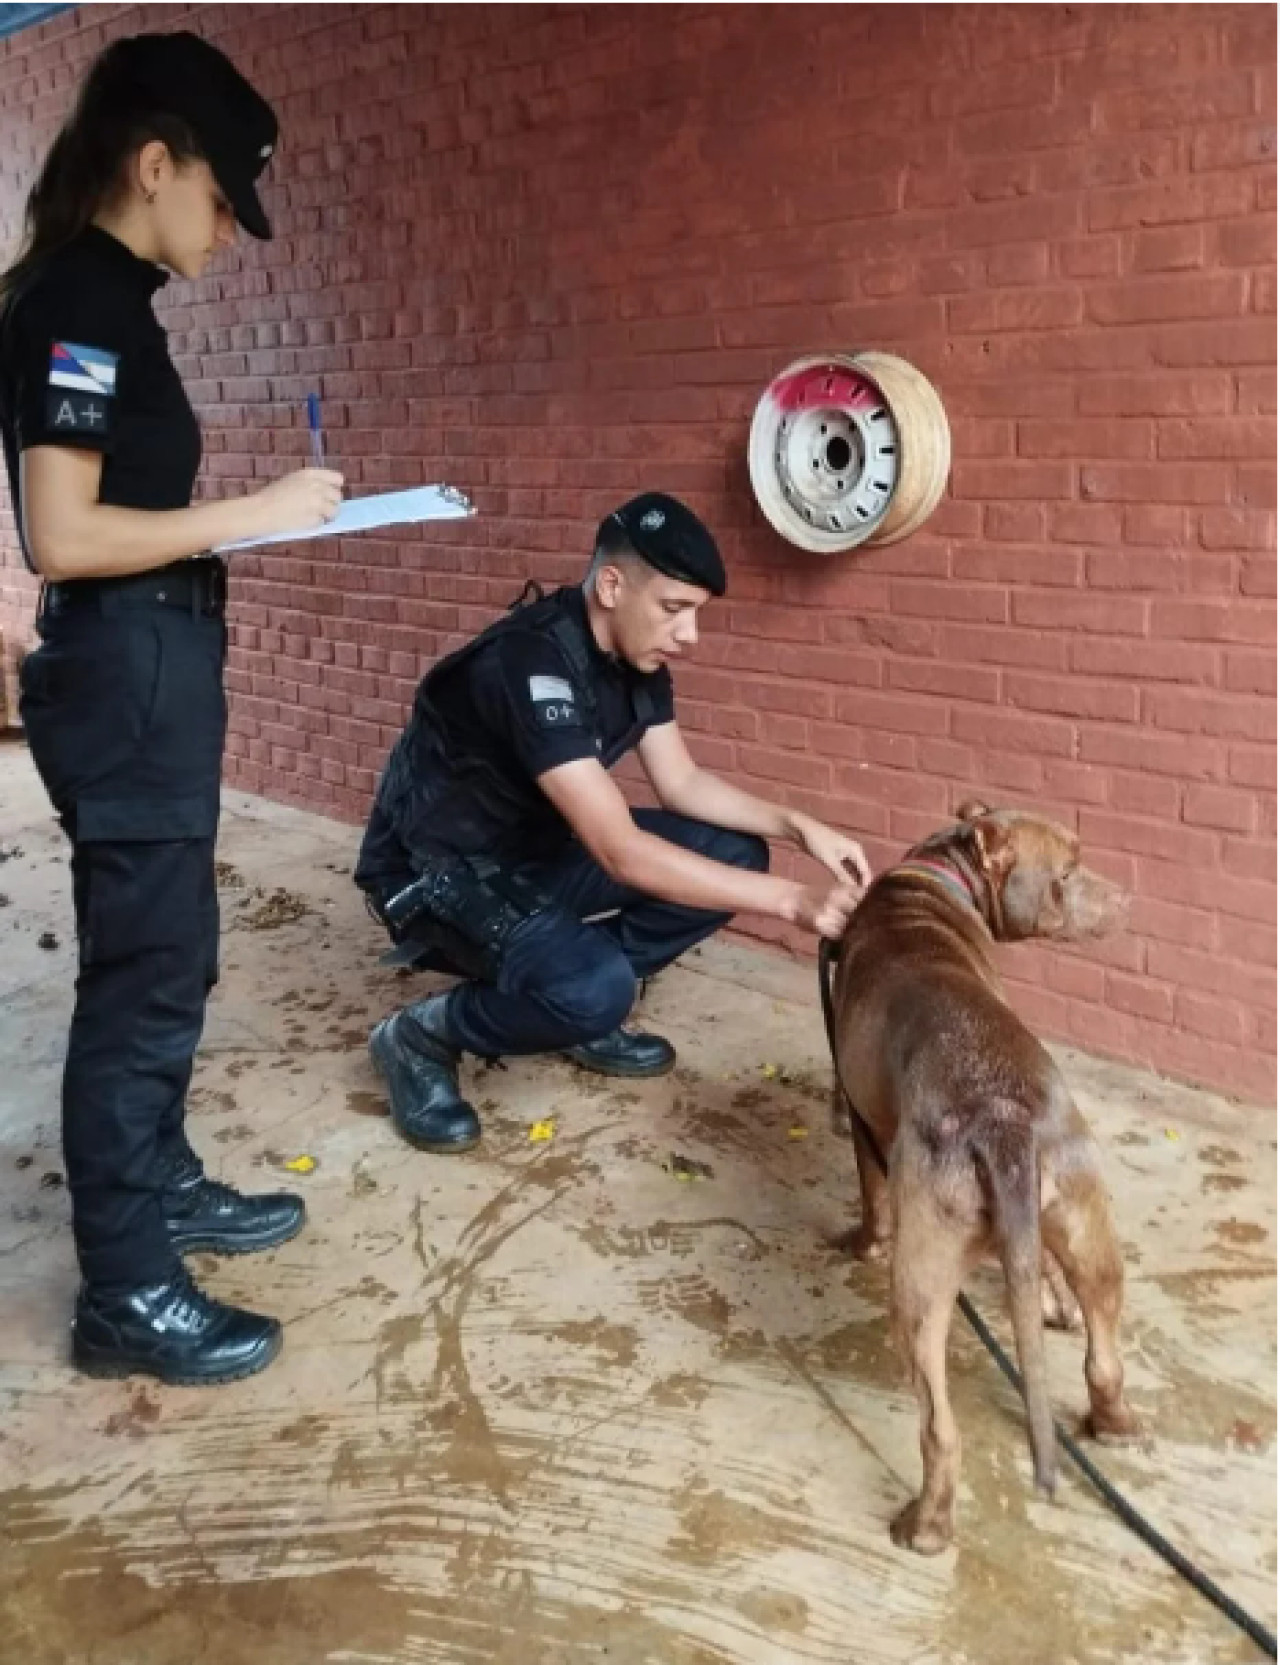 Efectivos de la comisaría de Dos de Mayo resguardaron al perro de raza pitbull. Foto: Misiones Online.